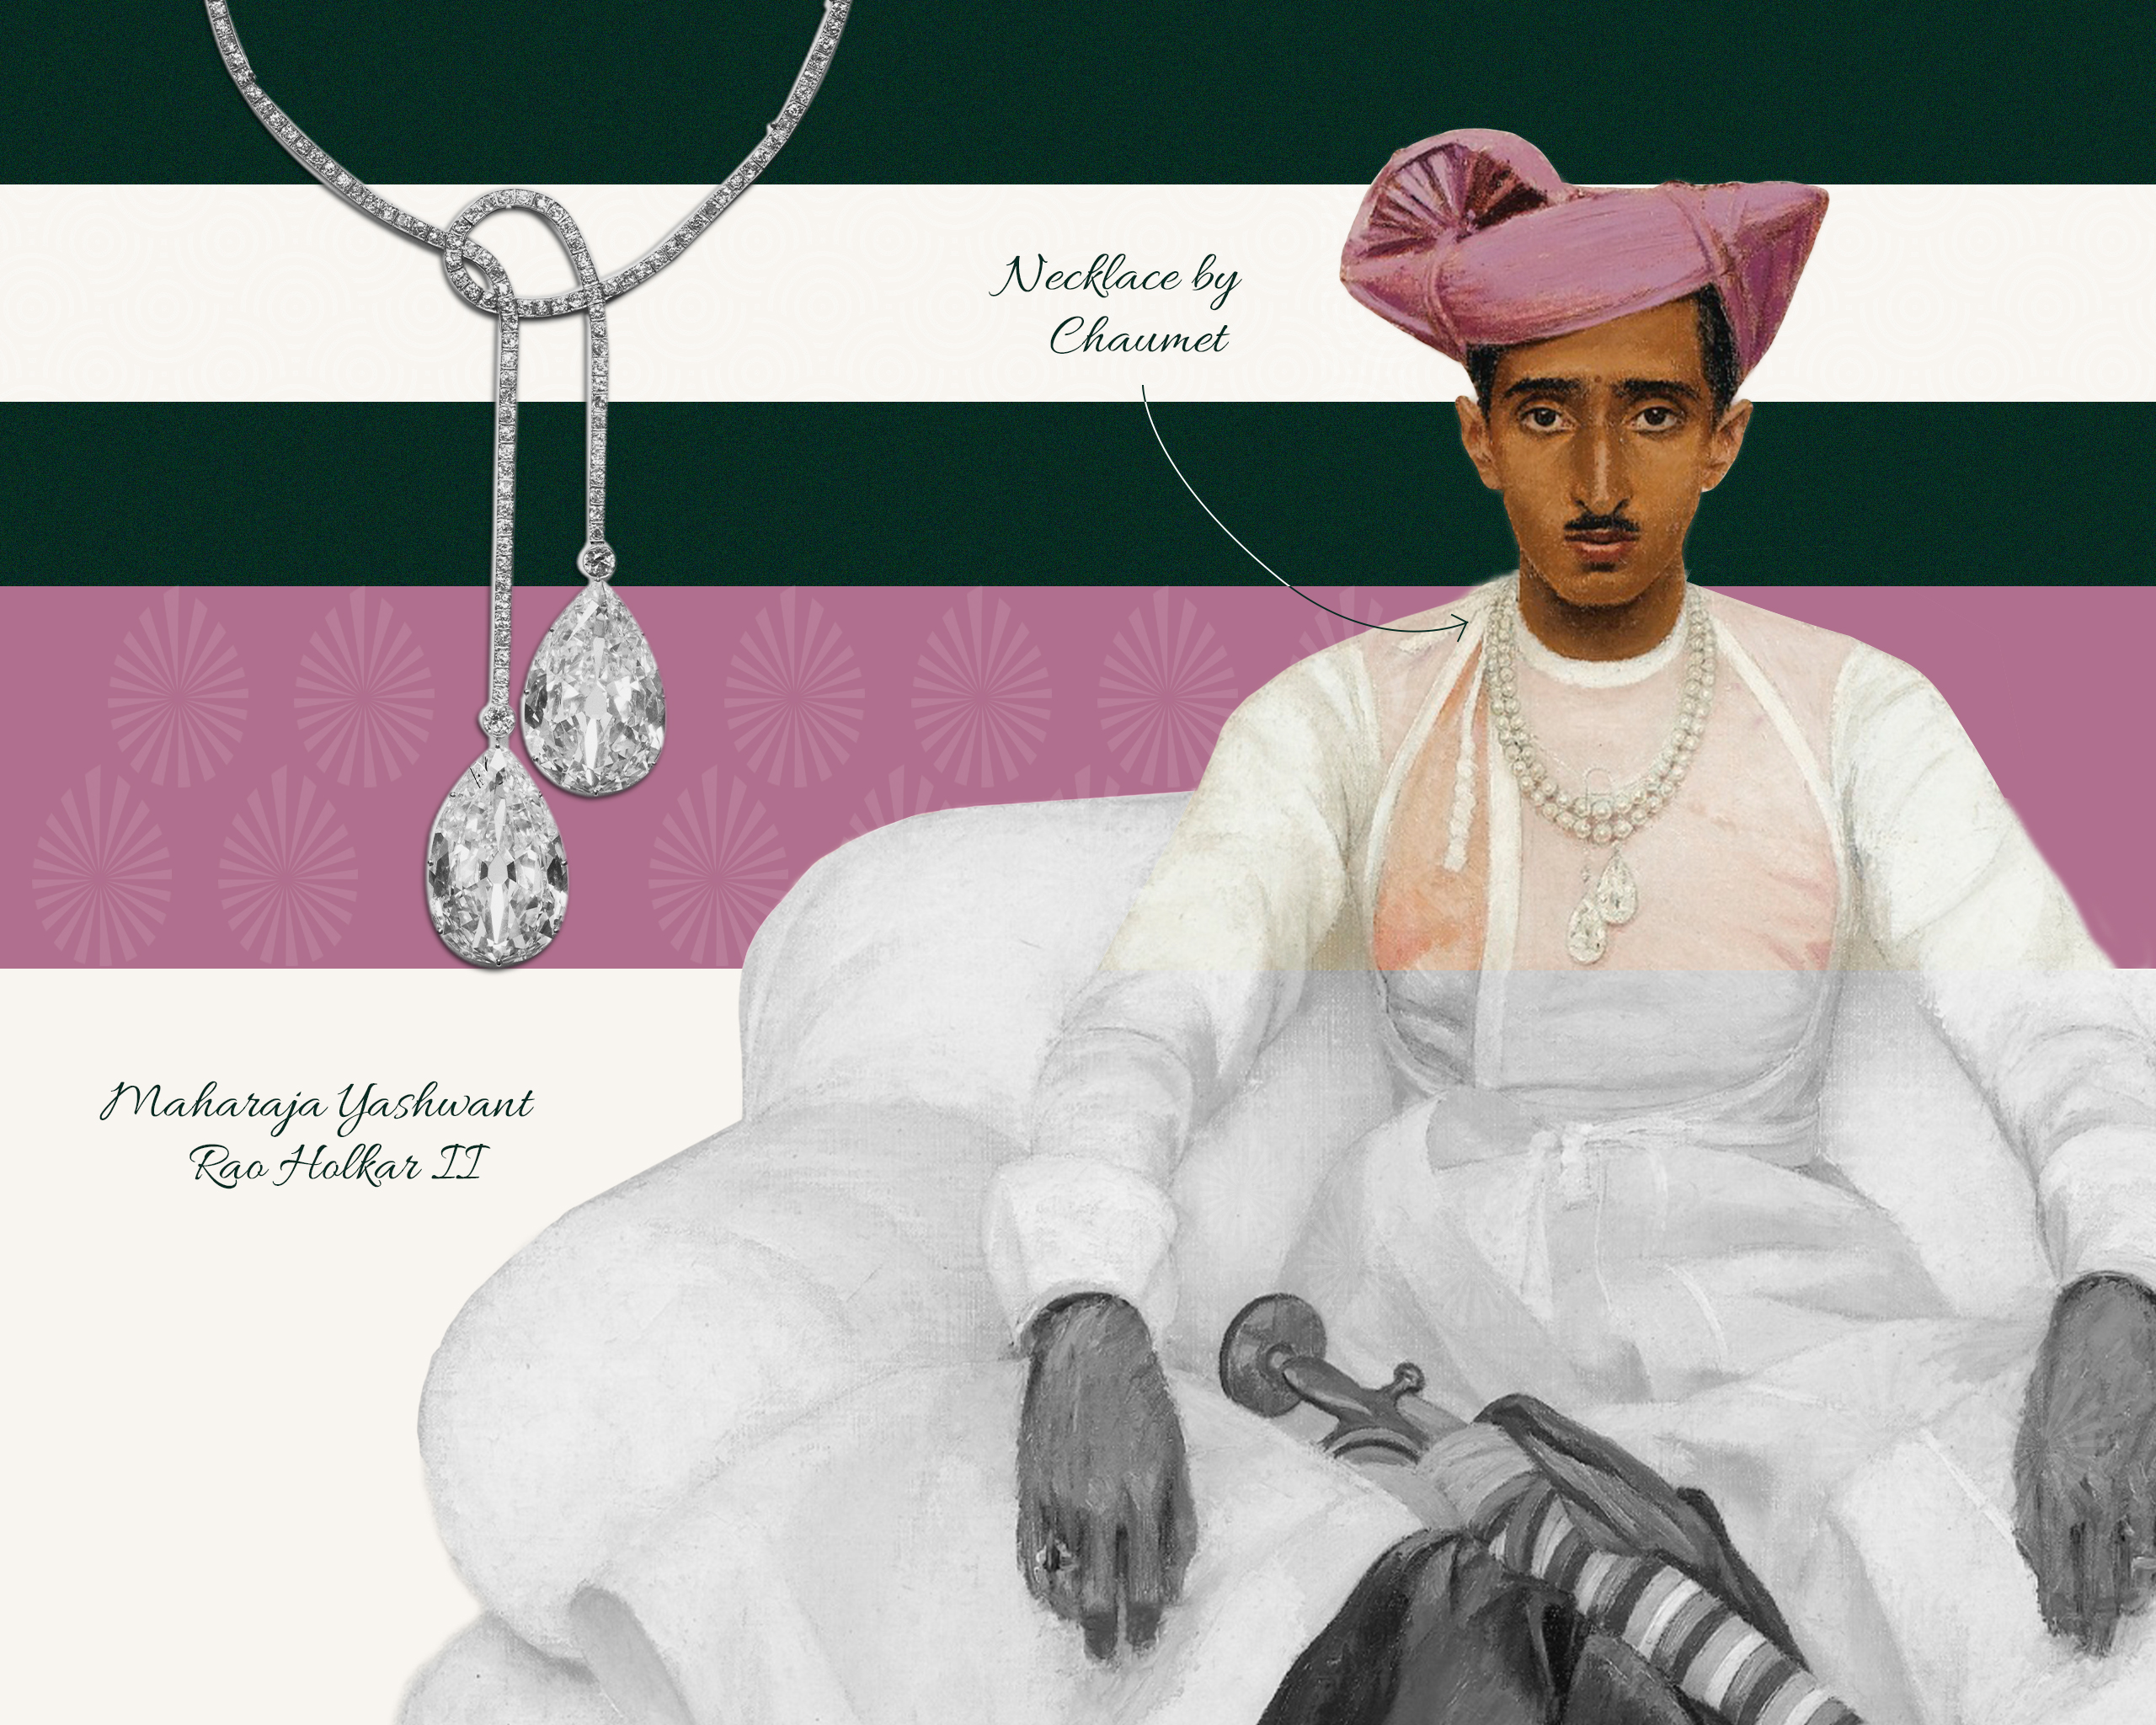 Royal Diamond necklace worn by Tukoji Rao Holkar III, Maharaja of Indore